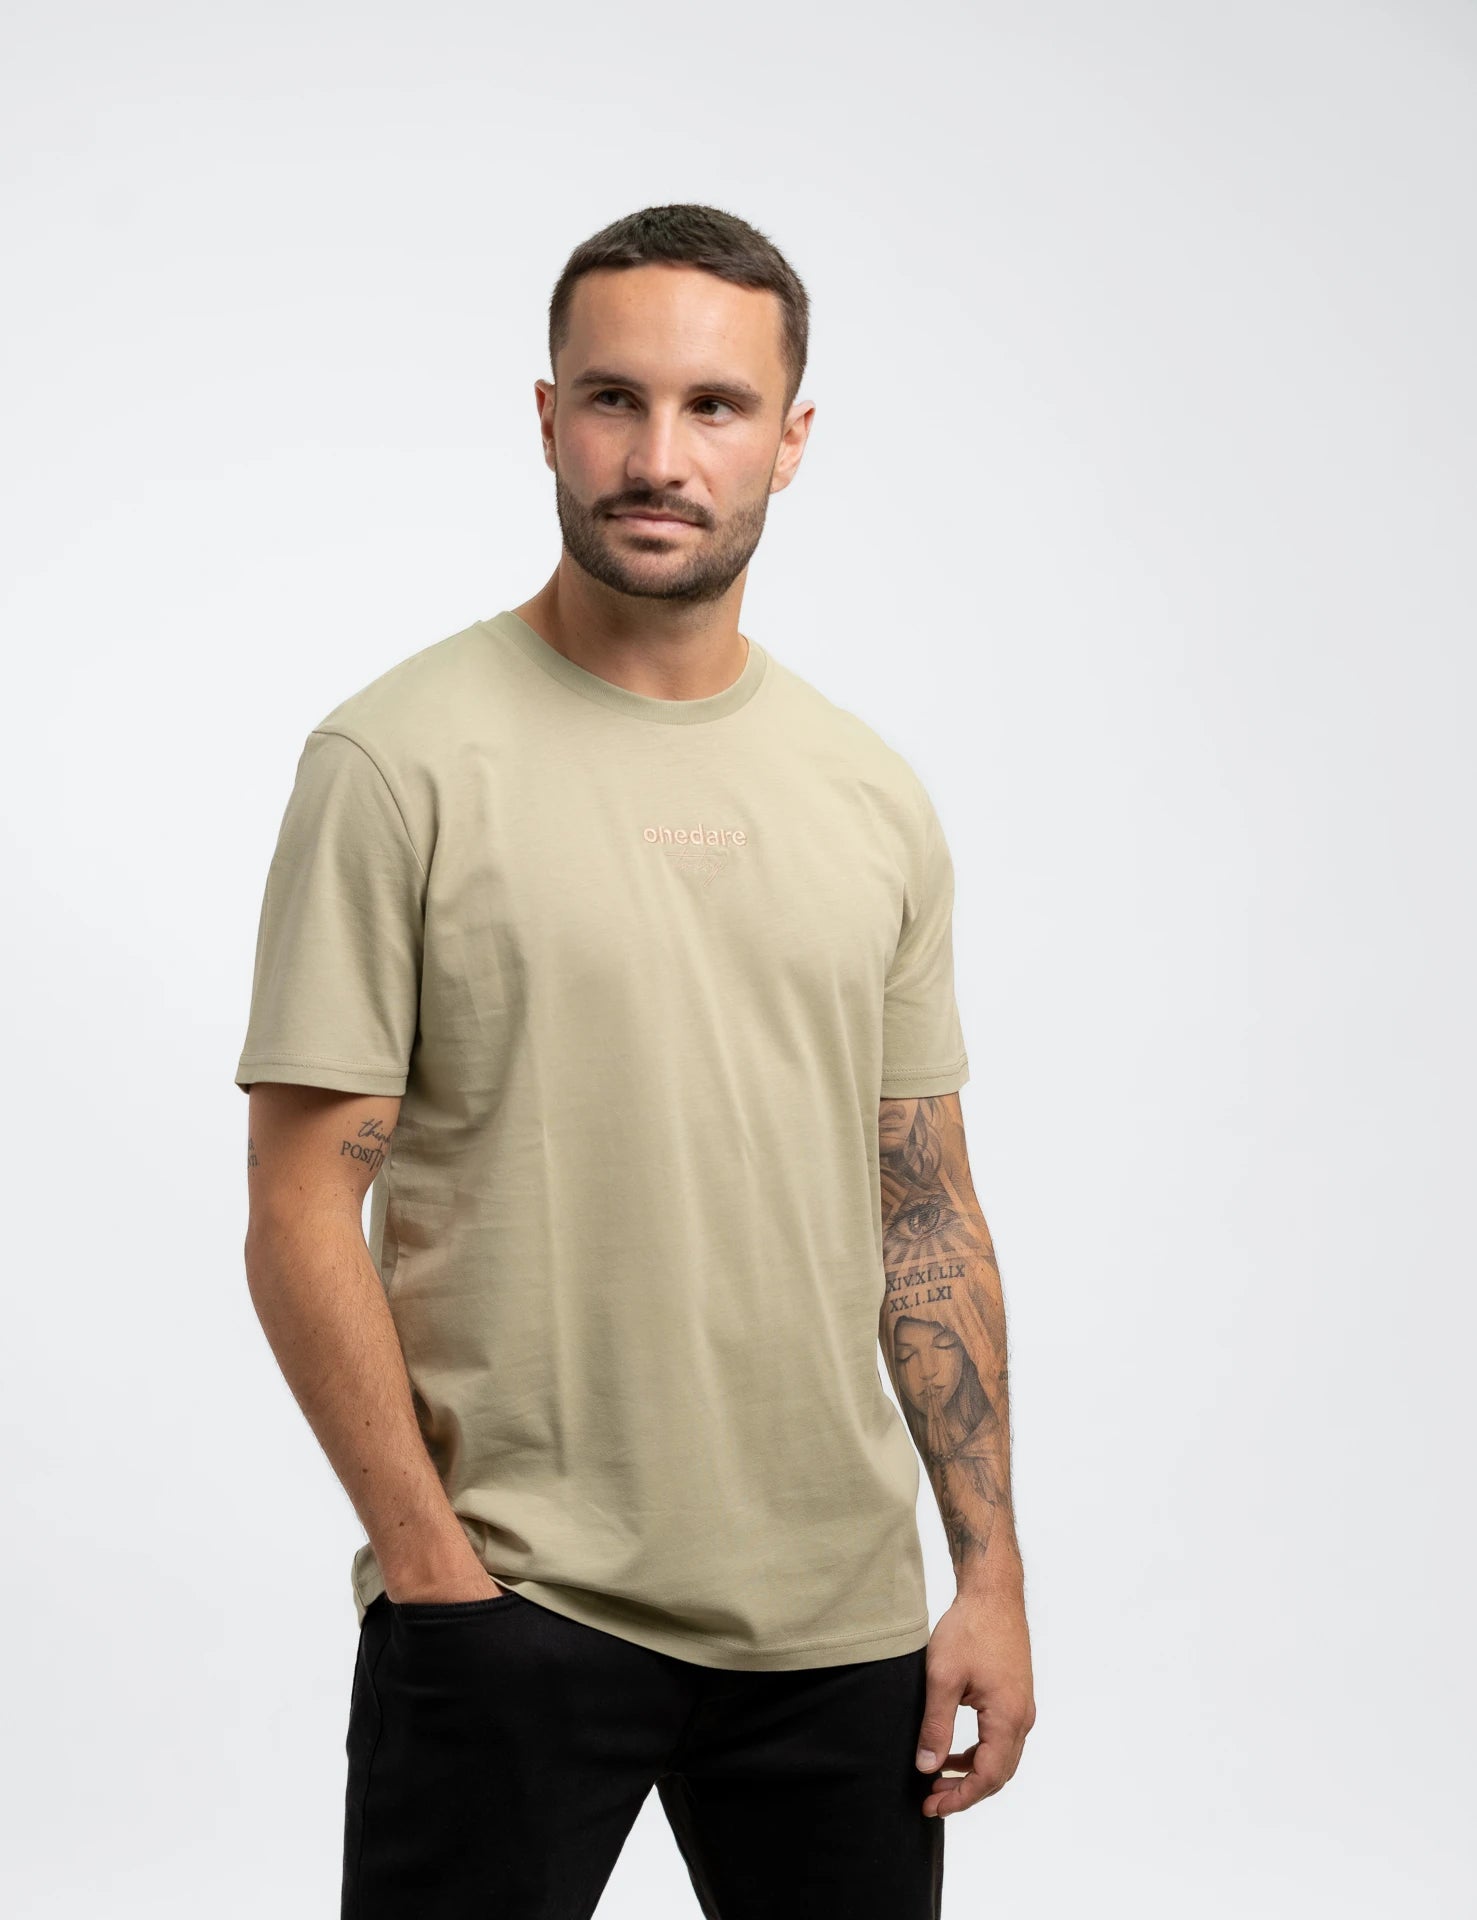 Lightgreen classic Bio-Baumwolle T-Shirt mit beigen, onedare totry Stick mittig auf der Brust.